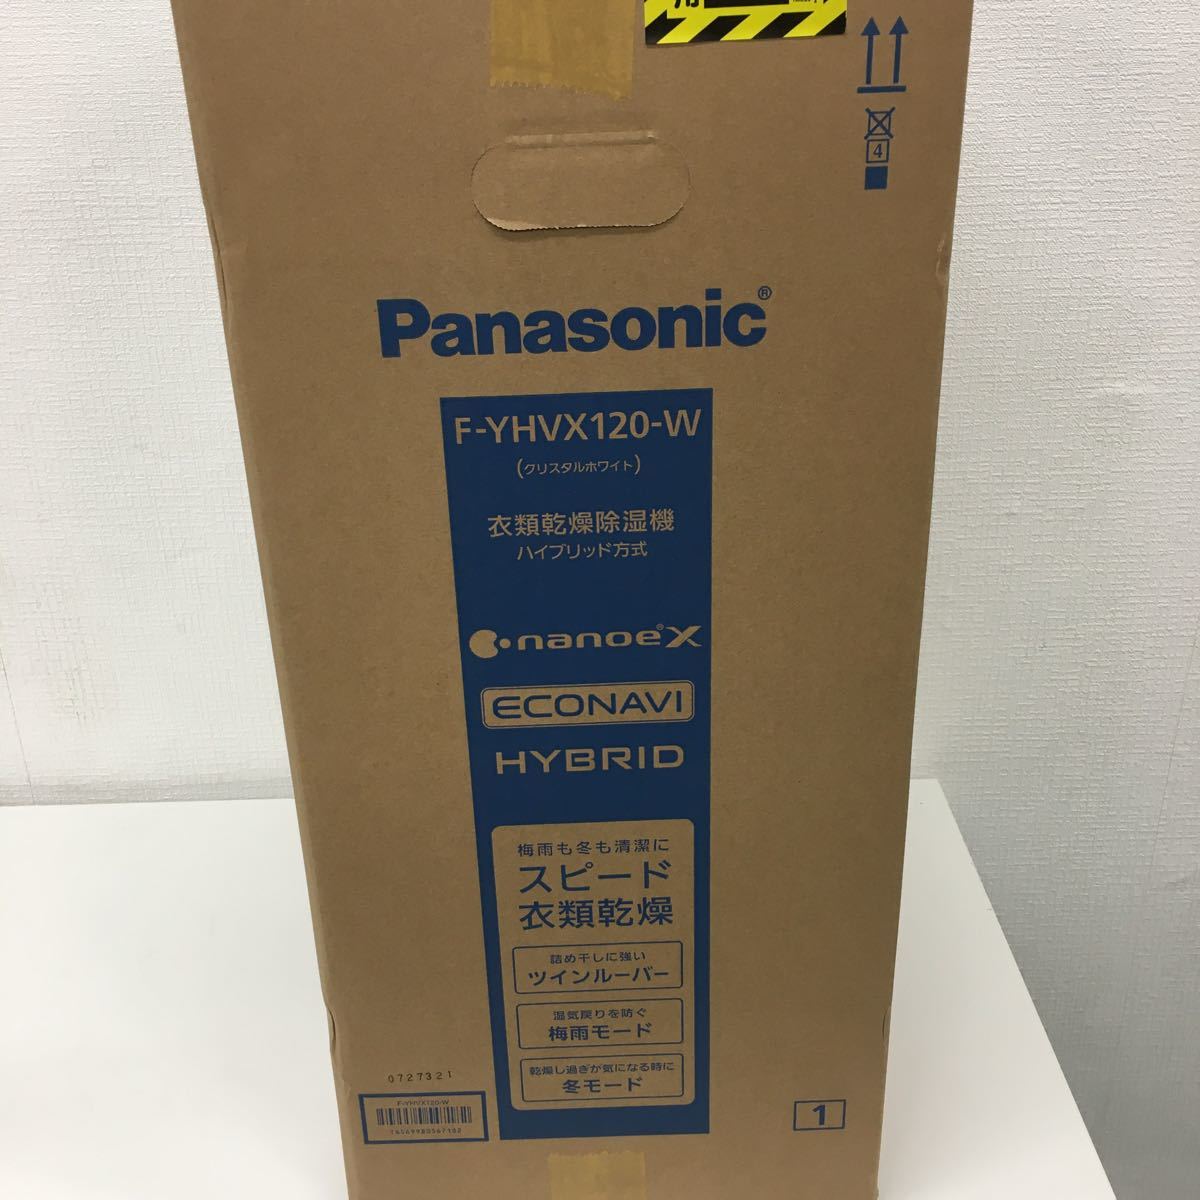 【未開封保管品】Panasonic F-YHVX120 衣類乾燥除湿機 ハイブリッド方式 パナソニック エコナビ ナノイーX （クリスタルホワイト）_画像3